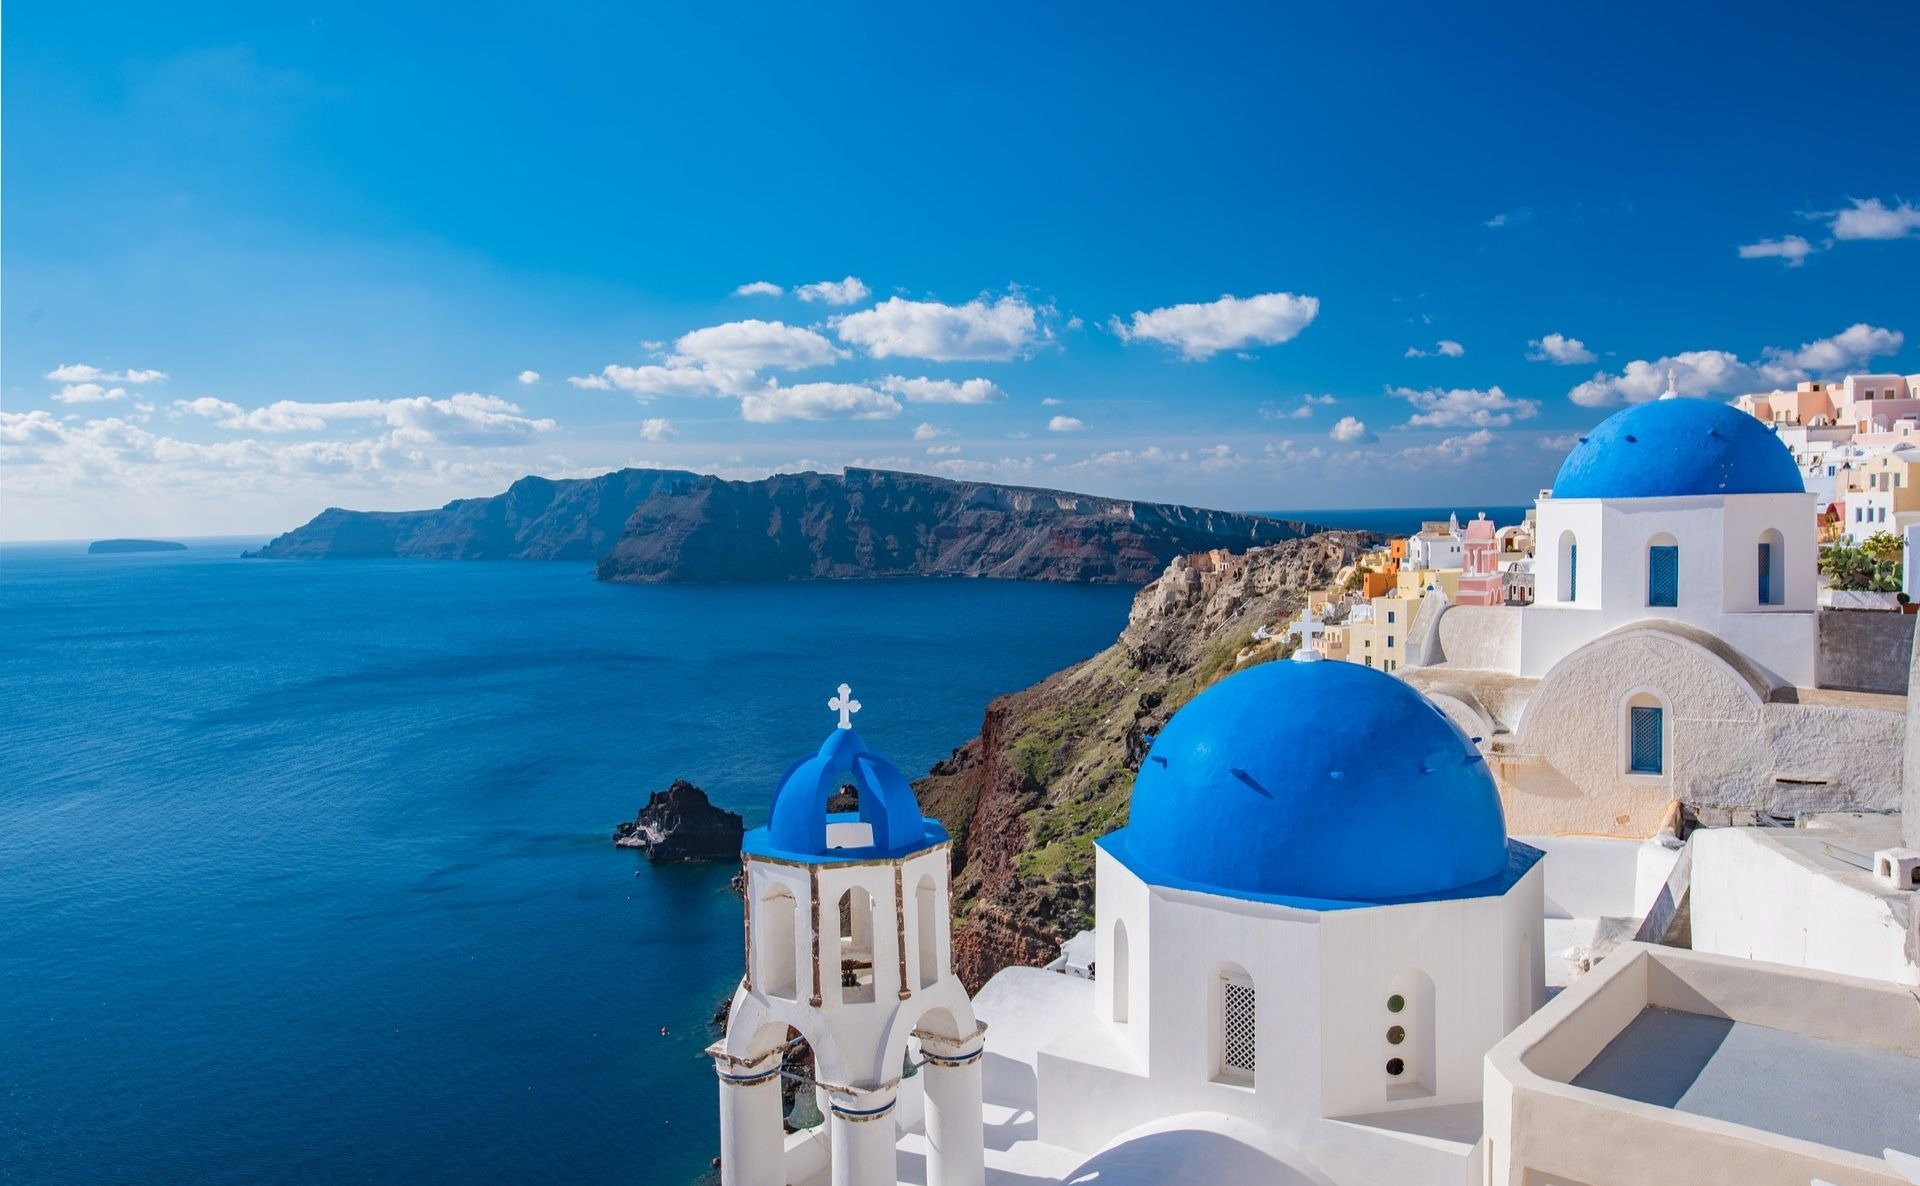 ギリシャ サントリーニ島のおすすめホテル厳選5選 憧れの青と白の美しい島へ The Flat Planet